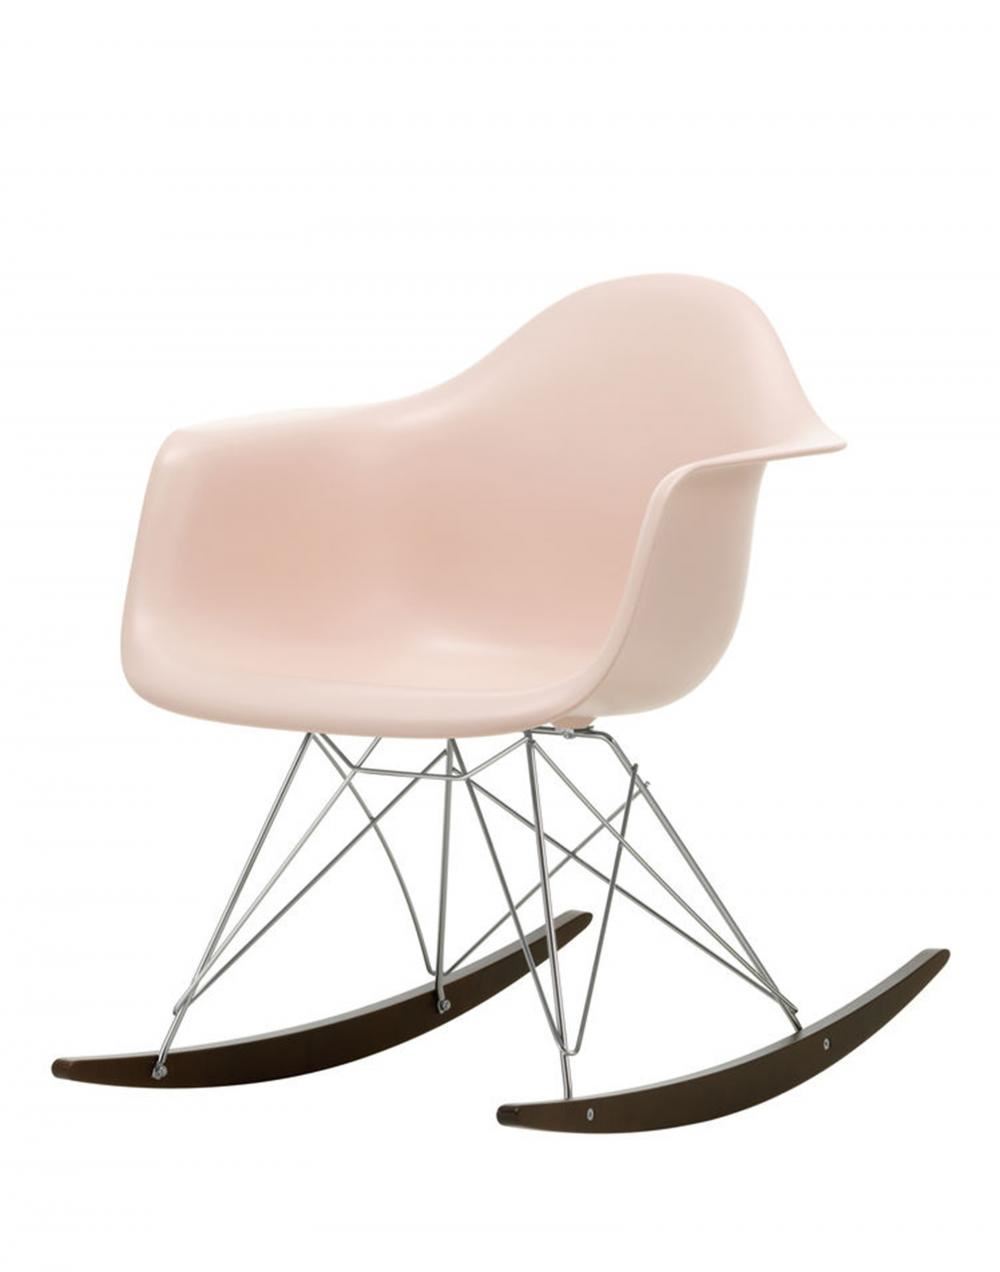 Eames Rar Plastic Rocking Chair Chrome Base Pale Rose Dark Maple